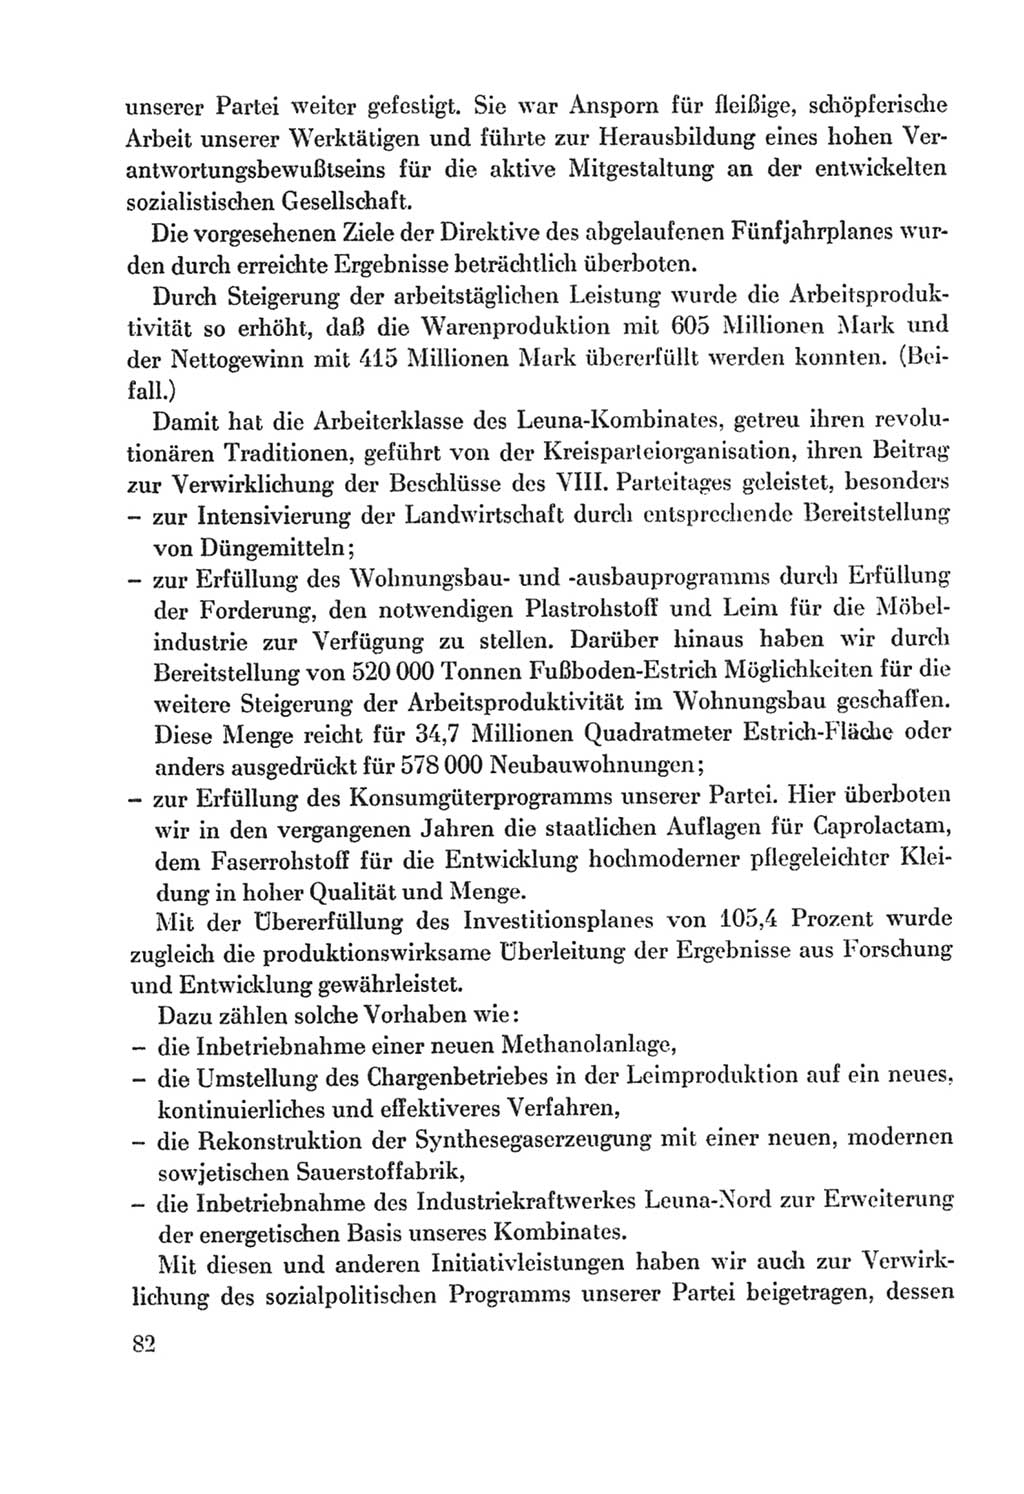 Protokoll der Verhandlungen des Ⅸ. Parteitages der Sozialistischen Einheitspartei Deutschlands (SED) [Deutsche Demokratische Republik (DDR)] 1976, Band 2, Seite 82 (Prot. Verh. Ⅸ. PT SED DDR 1976, Bd. 2, S. 82)